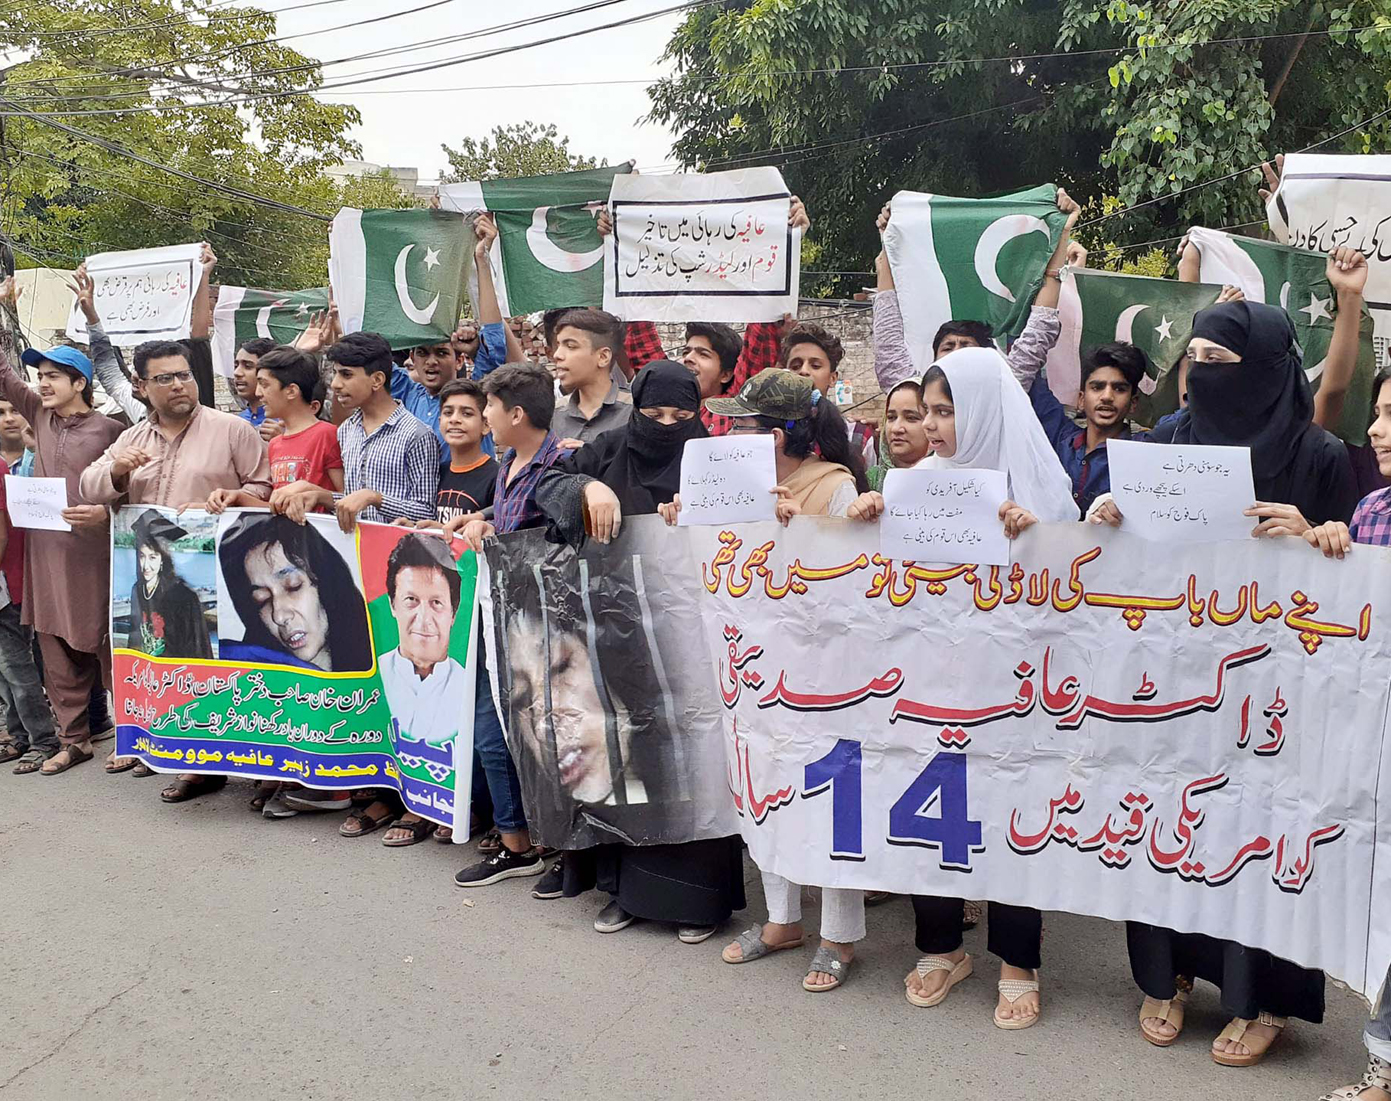 لاہور: عافیہ موومنٹ کے تحت ڈاکٹر عافیہ صدیقی کی رہائی کیلیے پریس کلب کے باہر احتجاج کیا جارہاہے